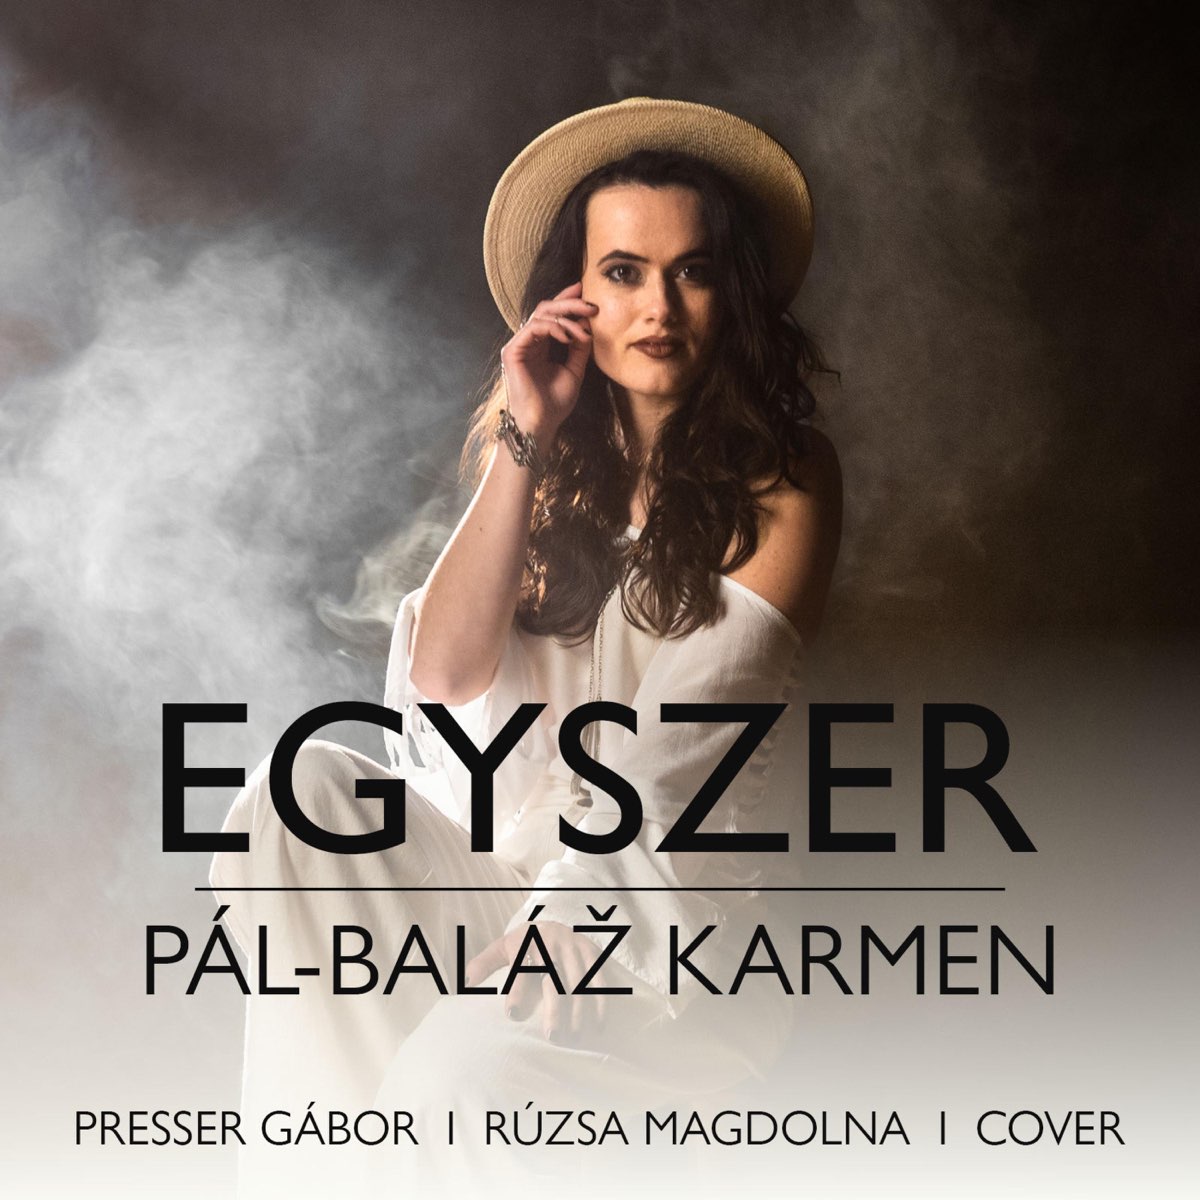 Egyszer - Single - Album by Karmen Pál-Baláž - Apple Music